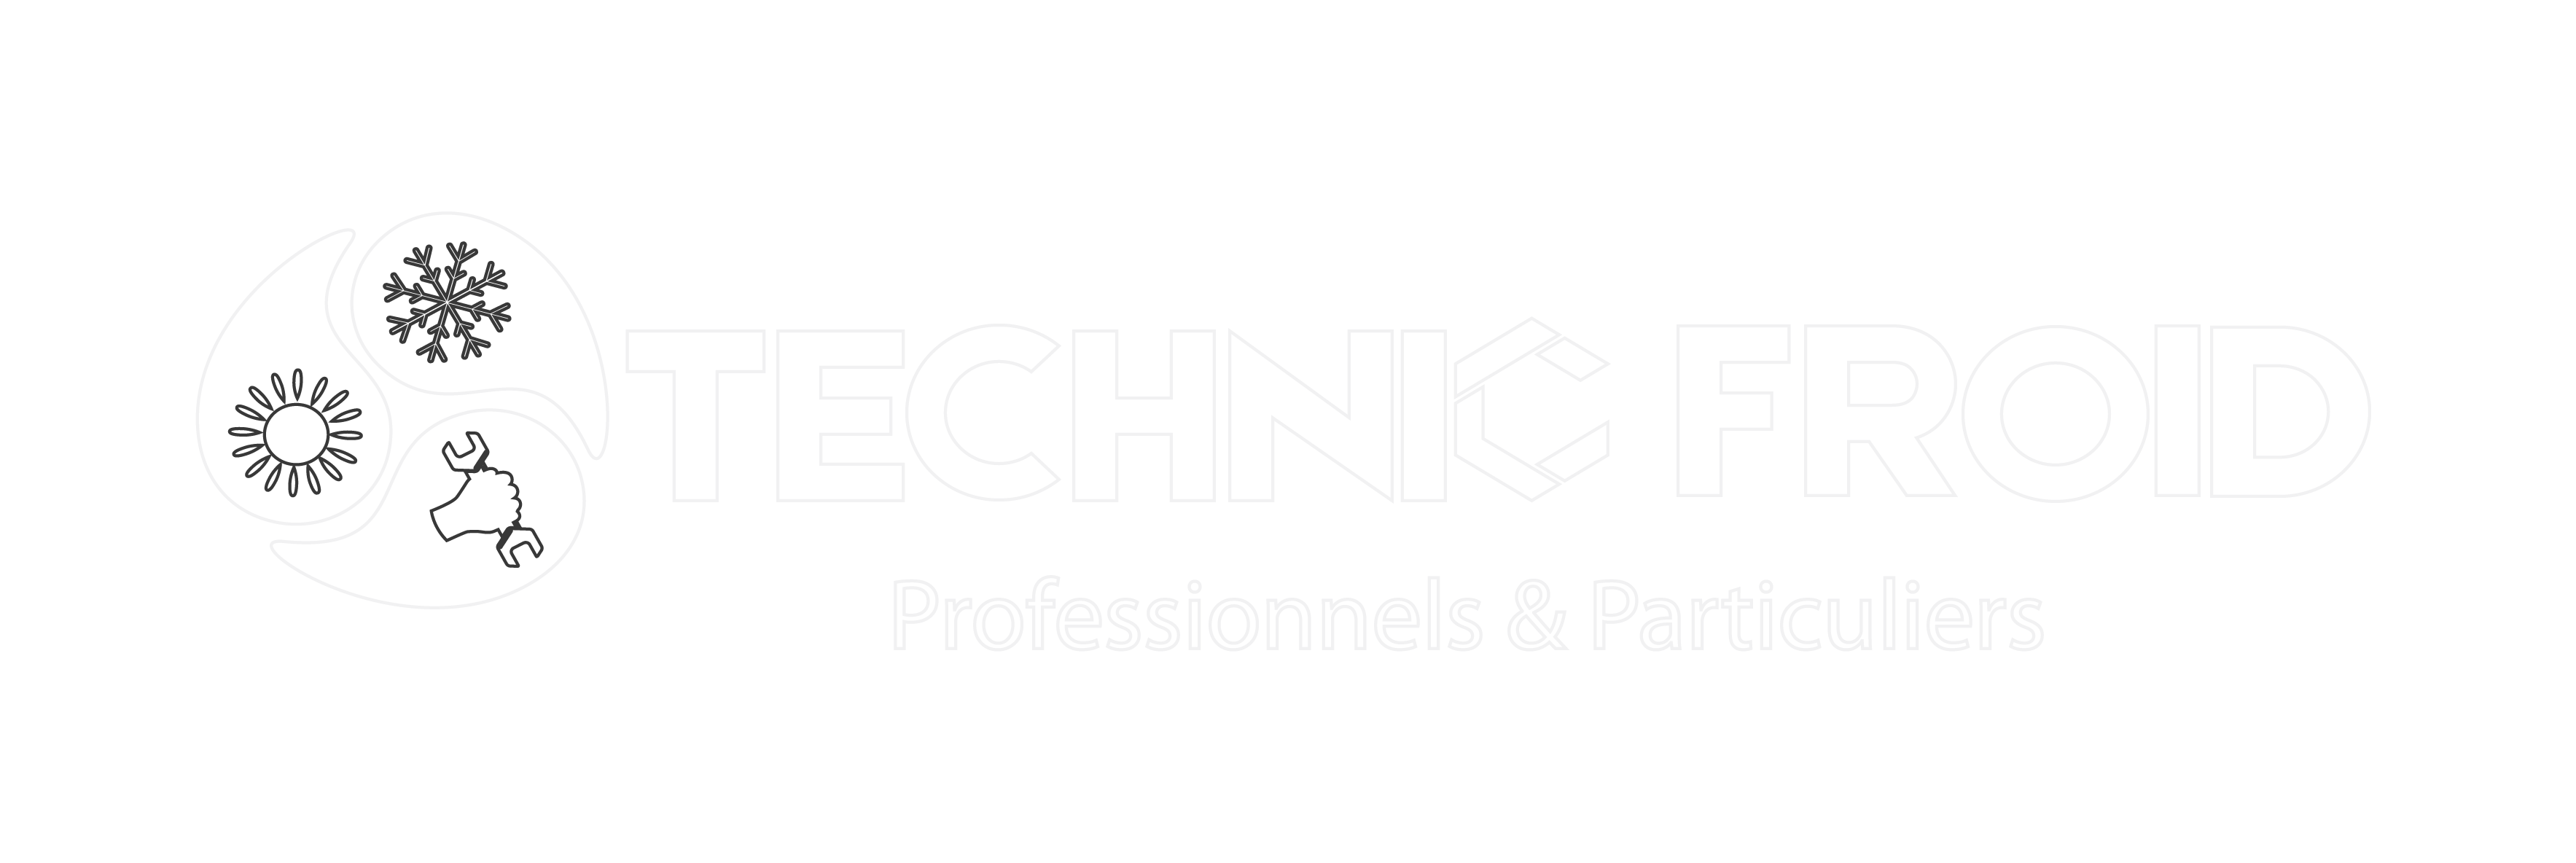 logo technic froid sarlat 2023